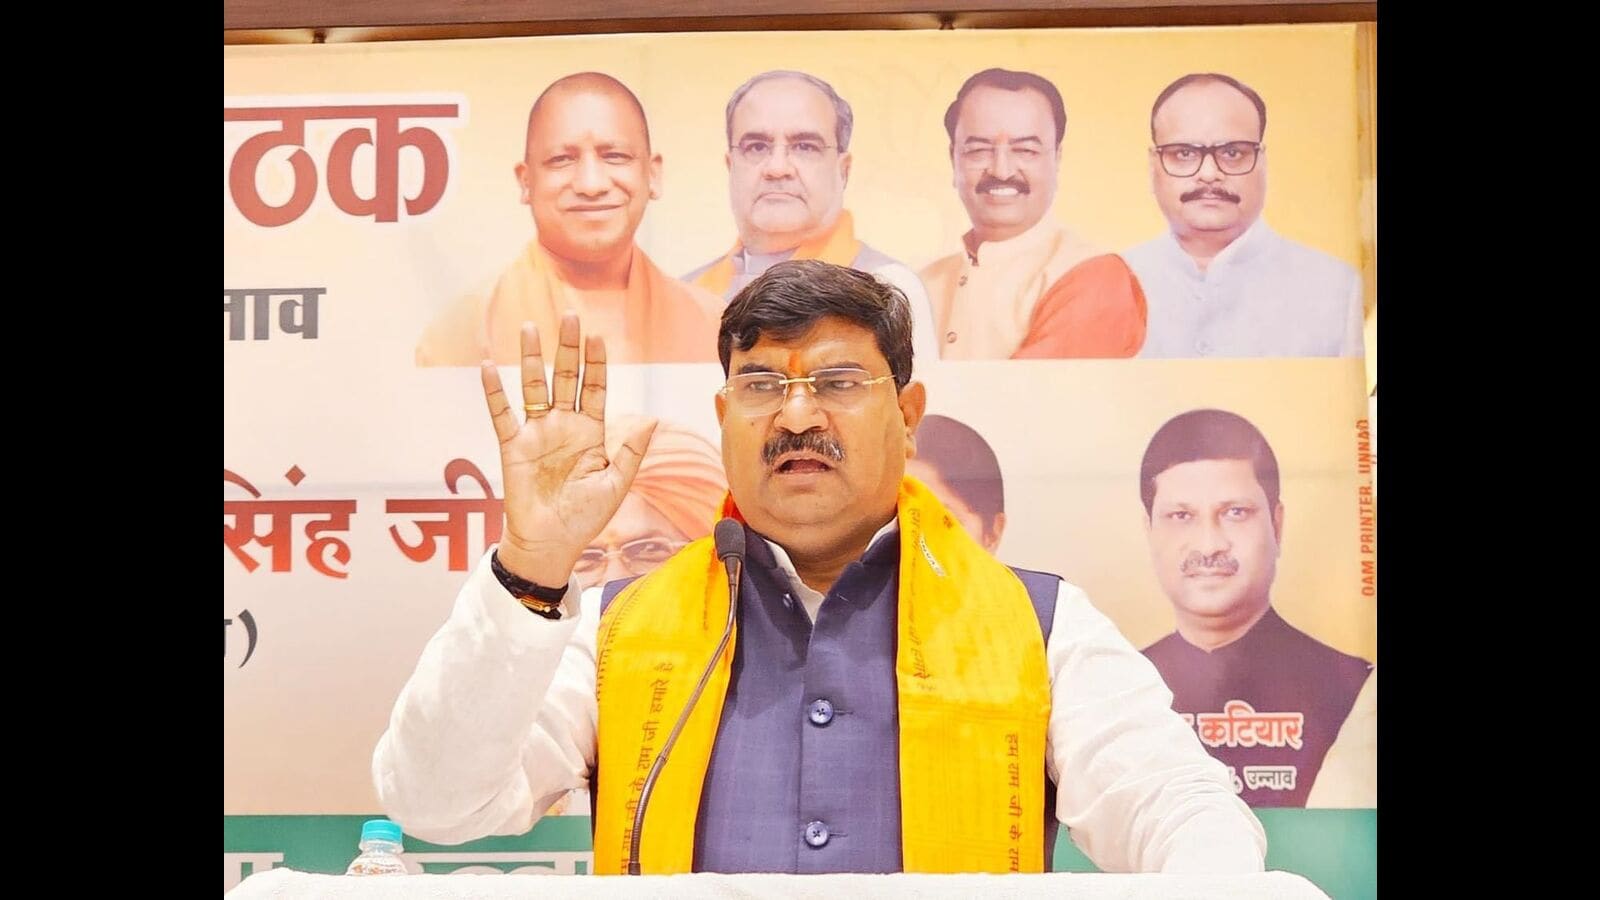 उत्तर प्रदेश: भाजपा ने बूथ प्रमुखों के लिए नई बैठने की योजना, कार्यकर्ताओं के लिए पोटलक लंच की करी शुरुआत